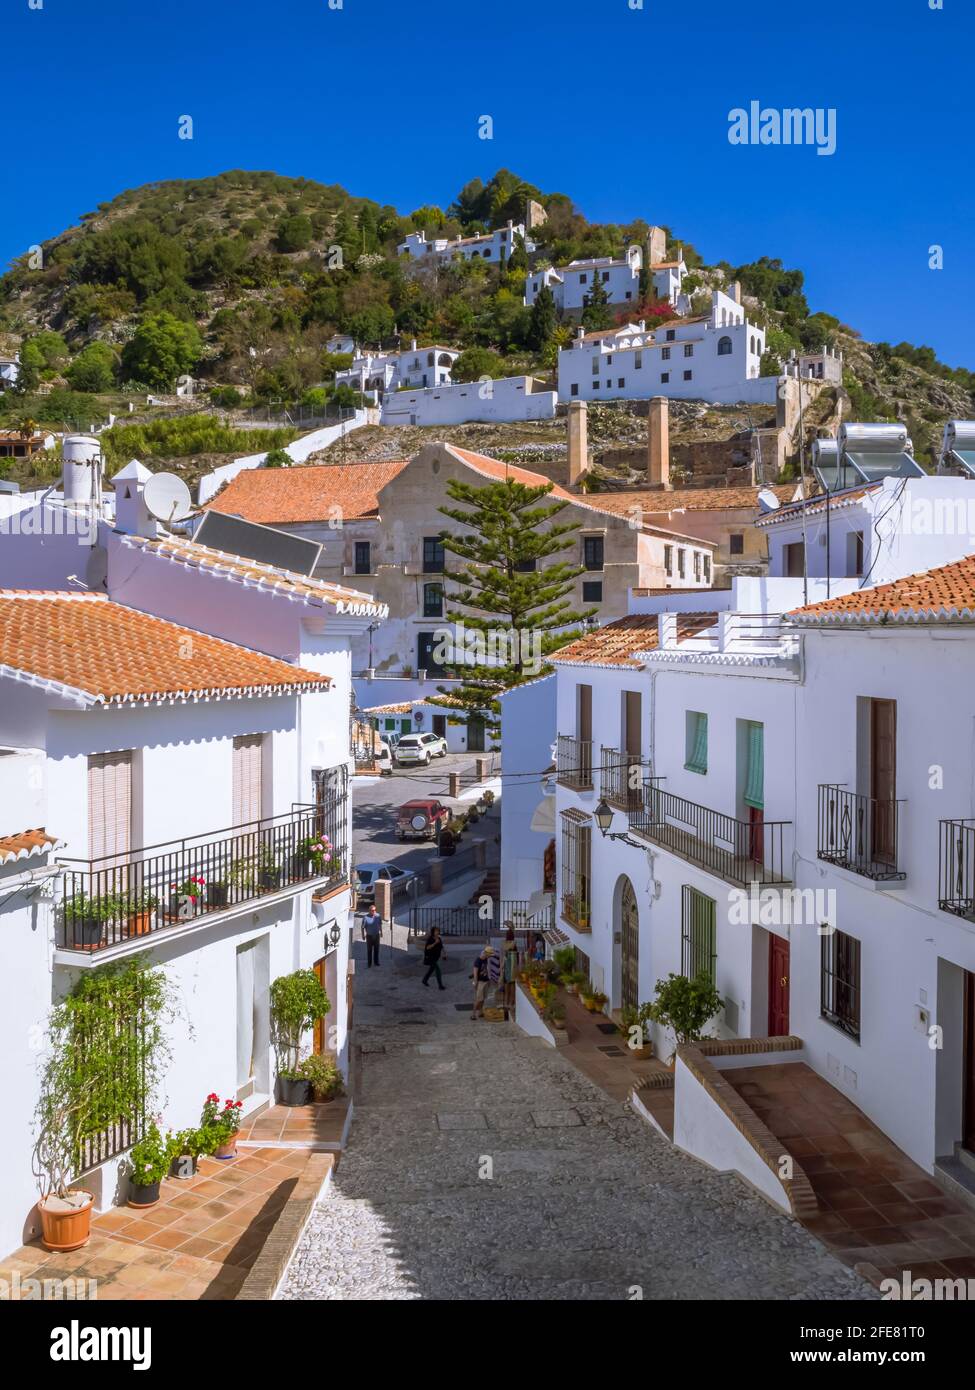 Une rue typique dans le village mauresque à flanc de colline de Frigiliana en Andalousie Espagne. Banque D'Images